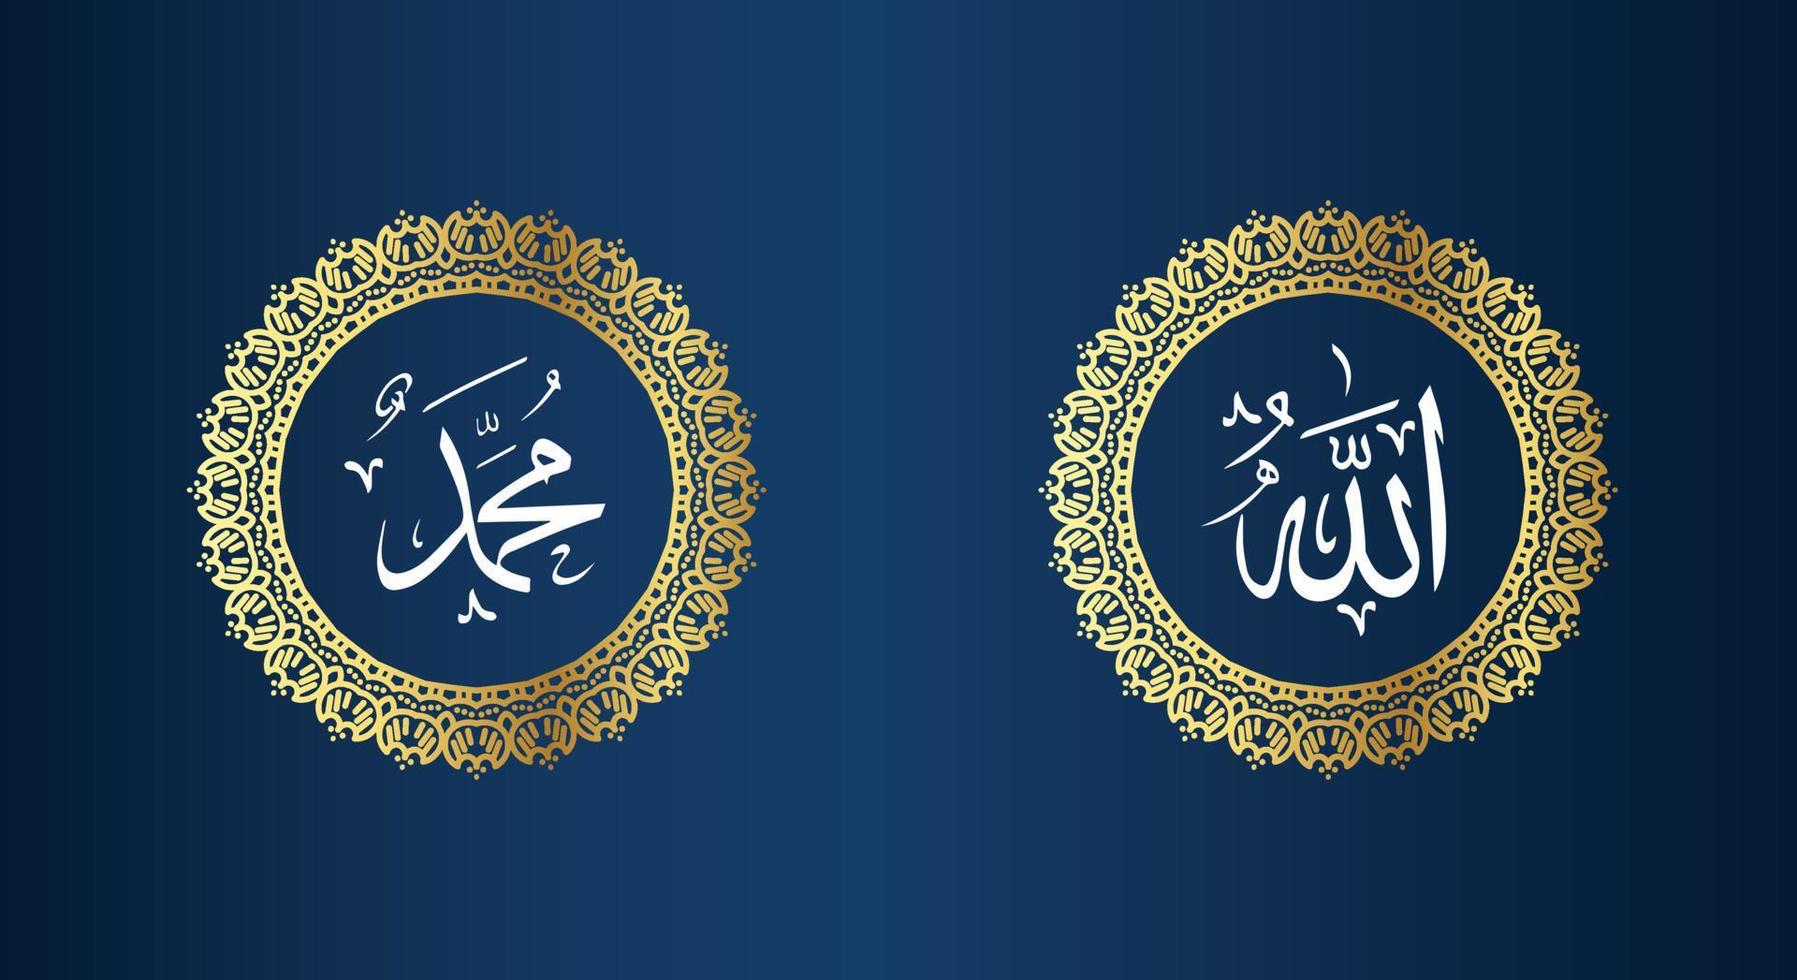 Allah Mohammed naam van Allah Mohammed, Allah Mohammed Arabisch Islamitisch schoonschrift kunst, met traditioneel kader en gouden kleur vector